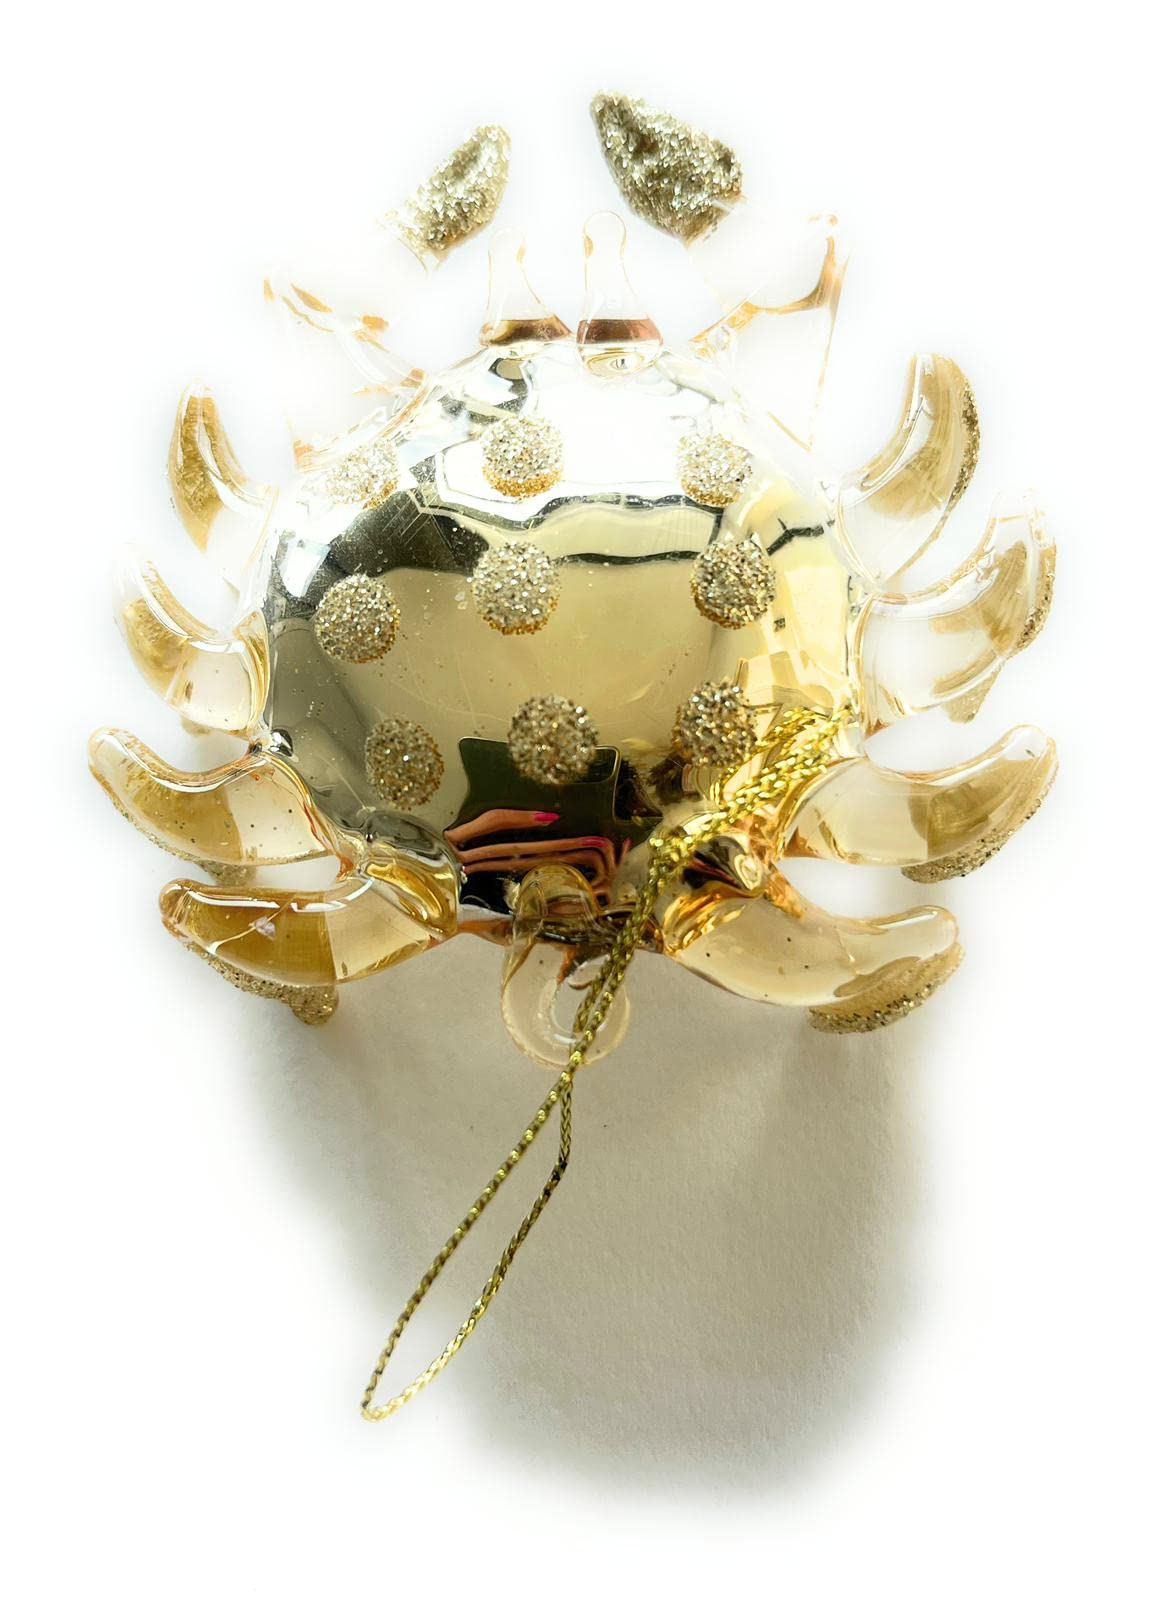 Boules de Noël - Pack de 2 Crabes de Noël 1 or et 1 nacre, décorés de perles et de paillettes (10x10x3 cm)